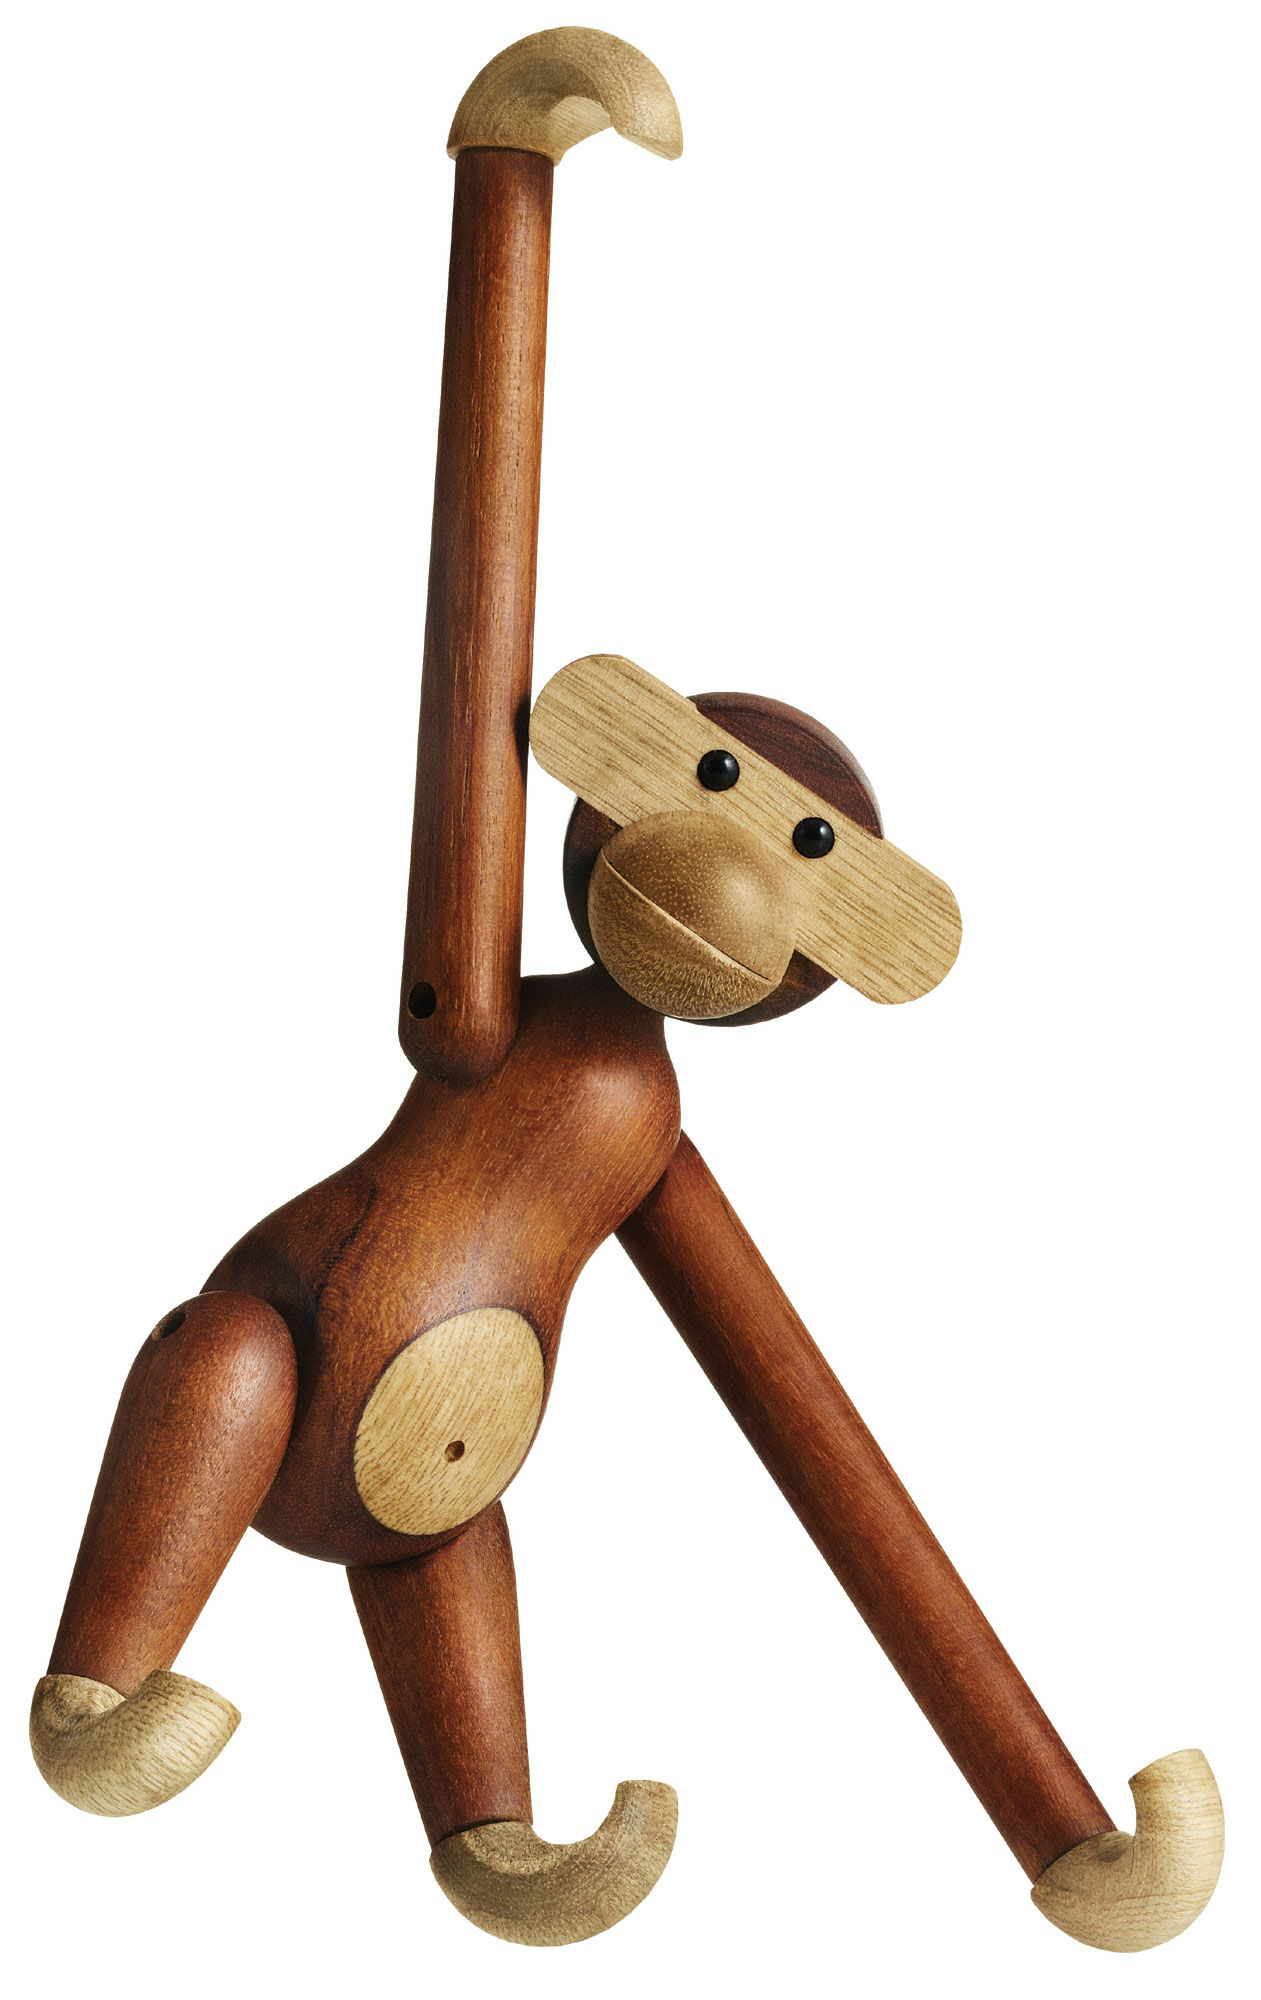 Holzfigur "Affe" (groß, Höhe 46 cm) von Kay Bojesen